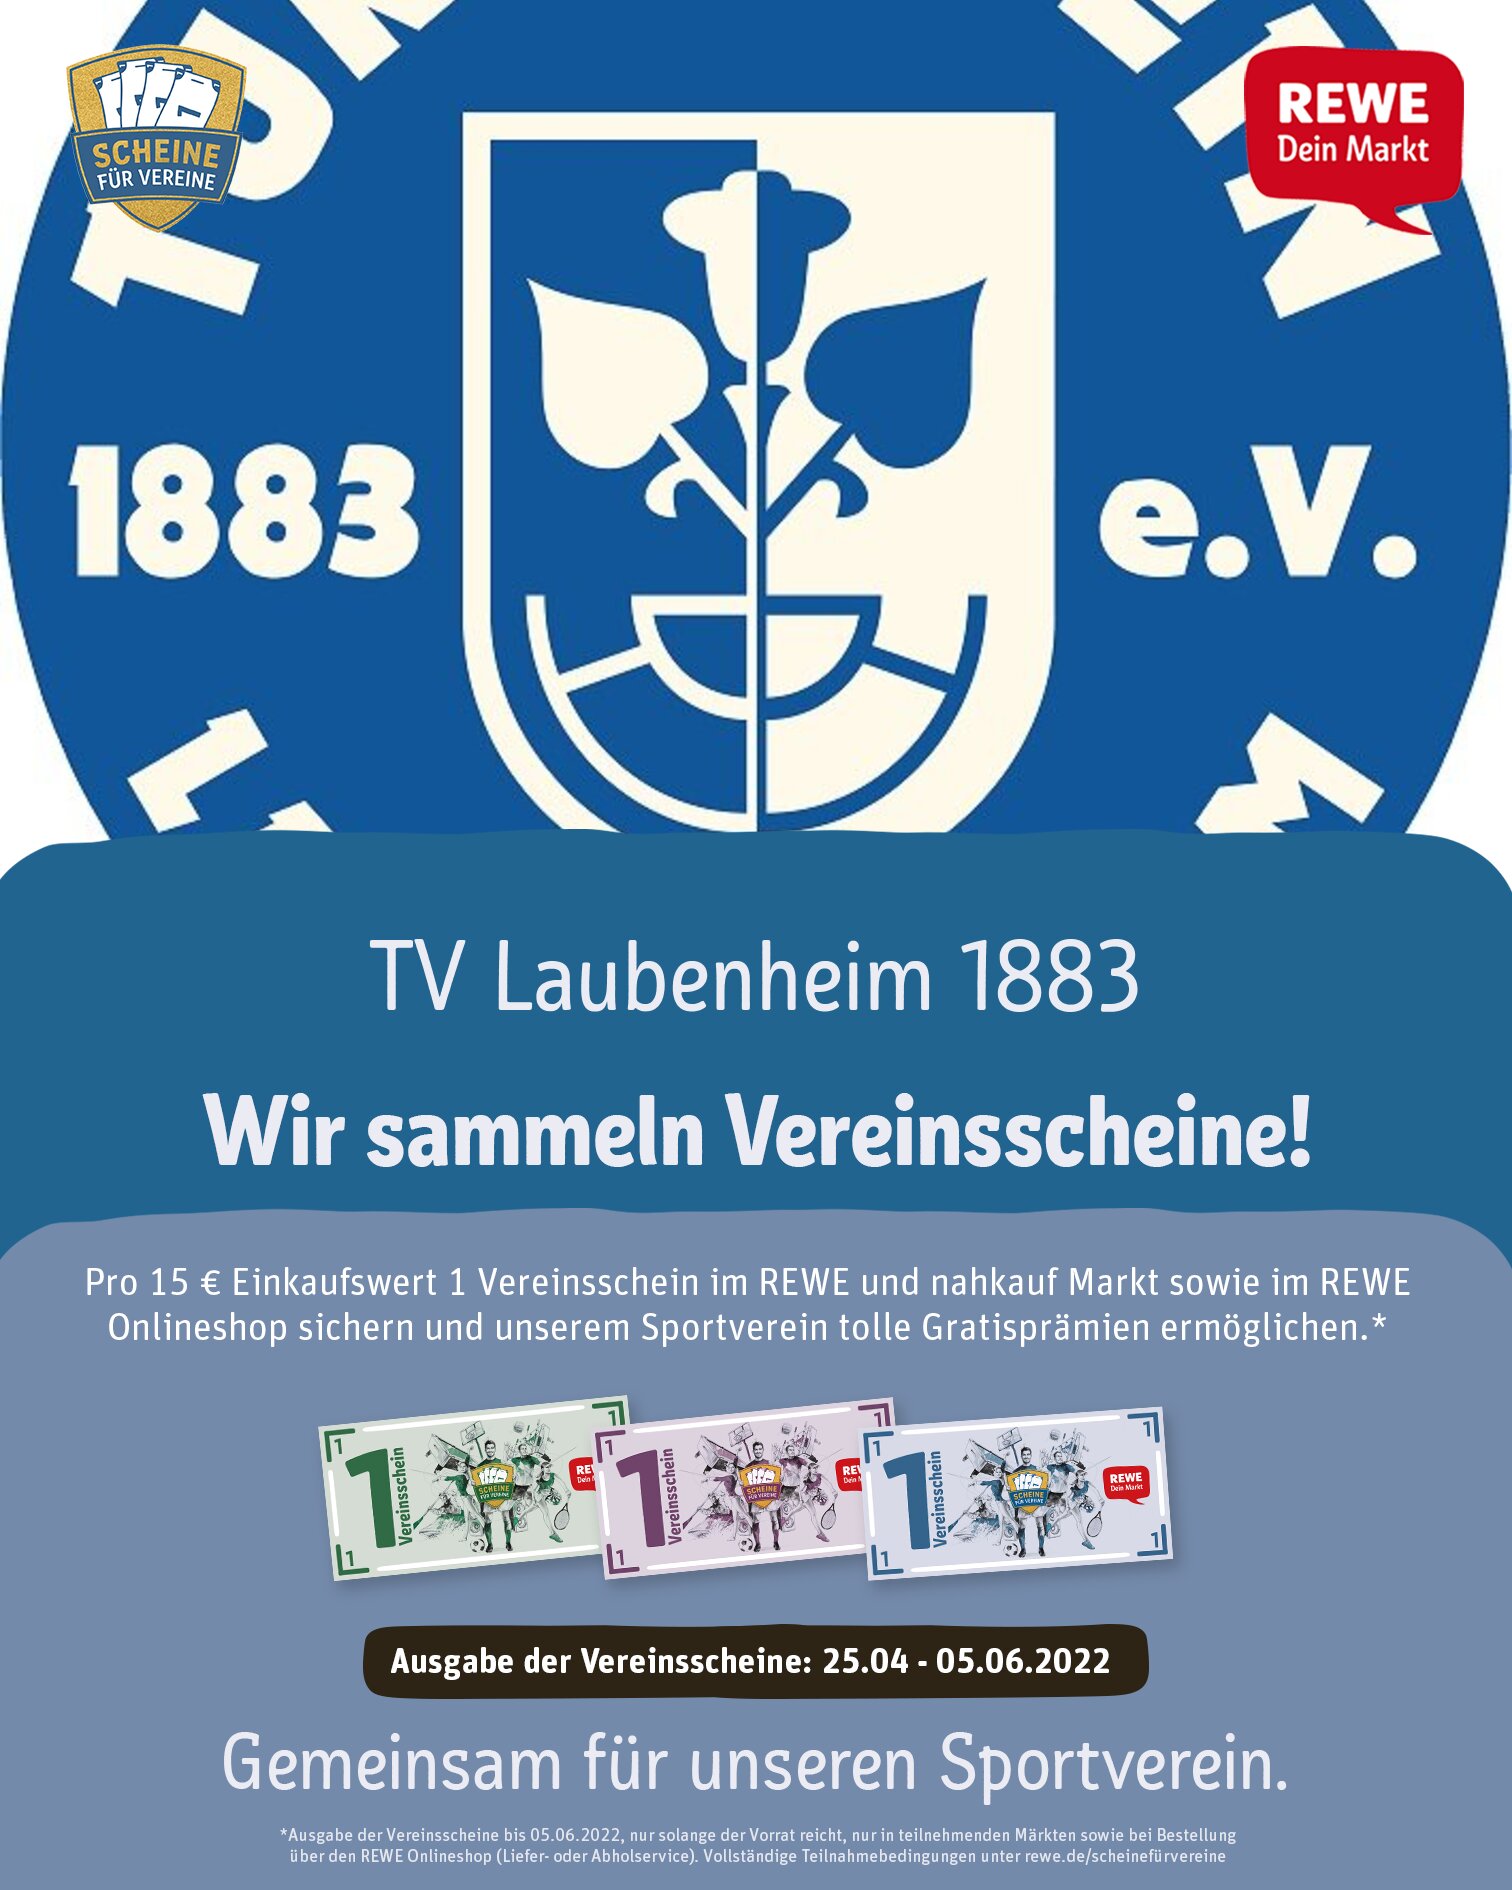 Scheine für Vereine - TVL 1883 e.V.